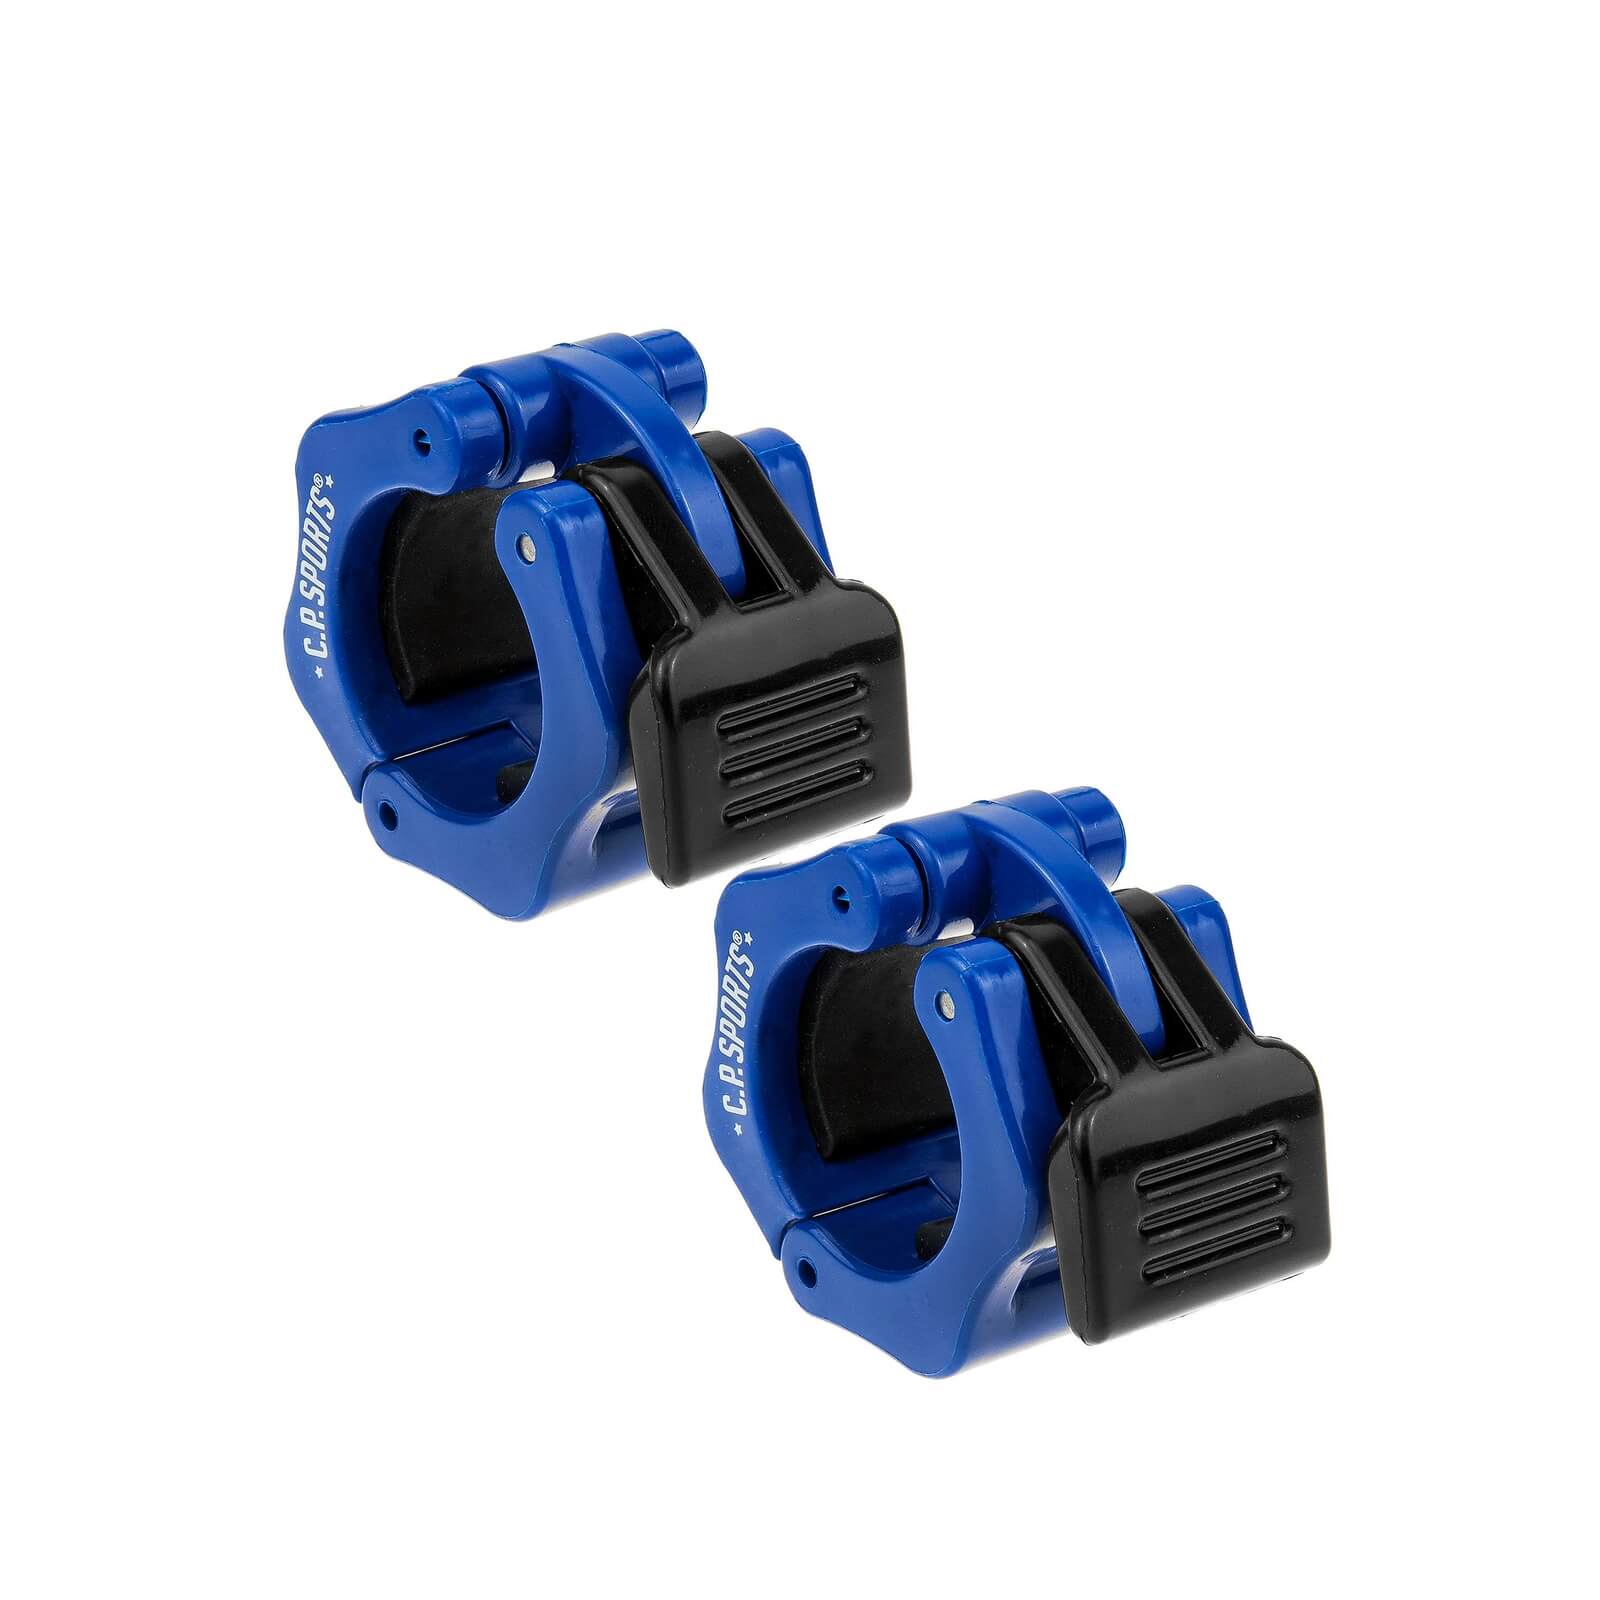 Jaw Lock 25 mm, blue/black, C.P. Sports